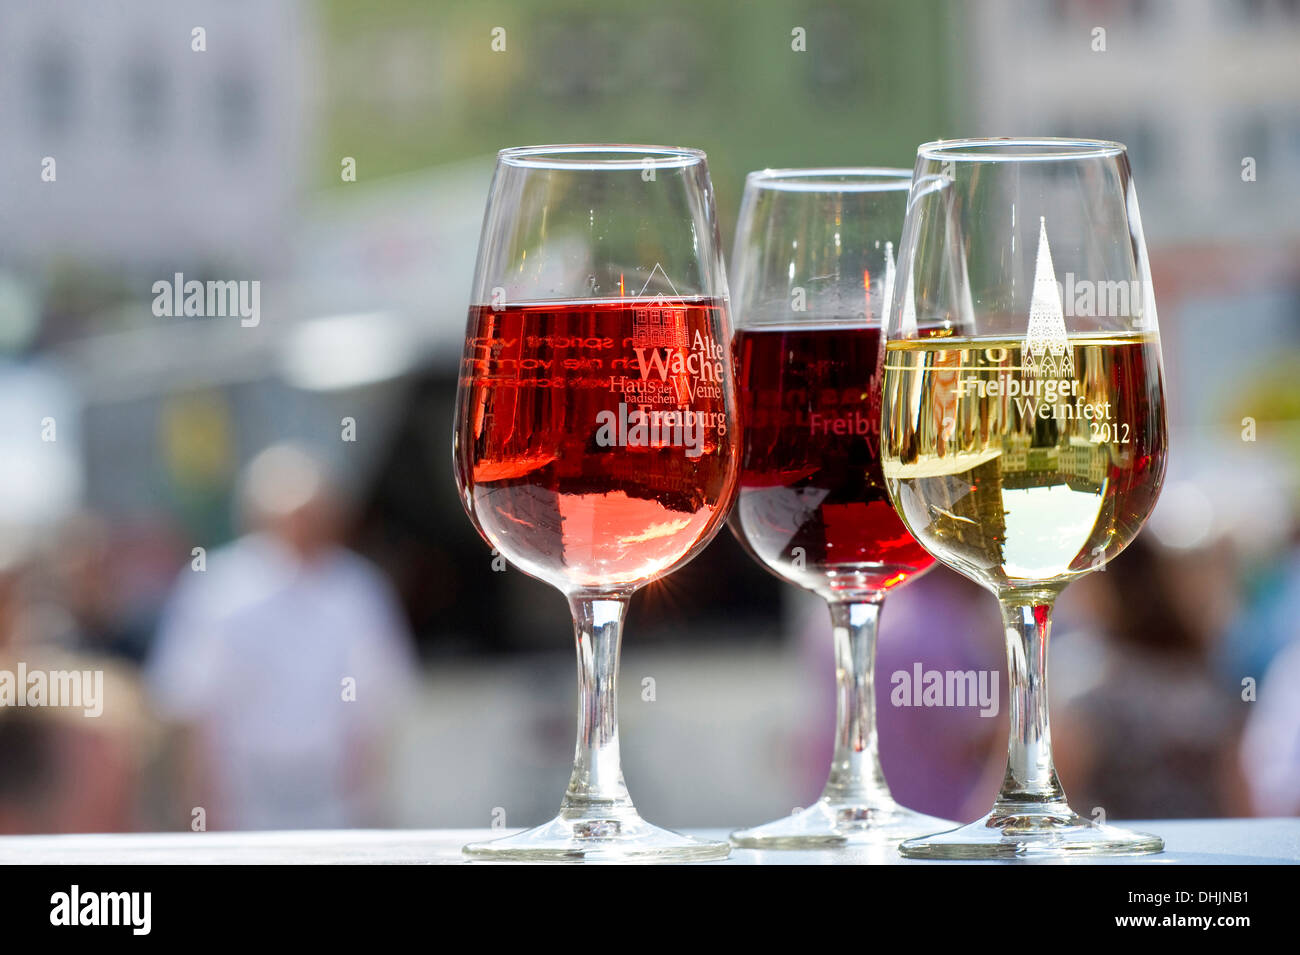 Gläser Wein auf dem Weinfest, Juli 2012, Freiburg Im Breisgau, Schwarzwald, Baden-Württemberg, Deutschland, Europa Stockfoto